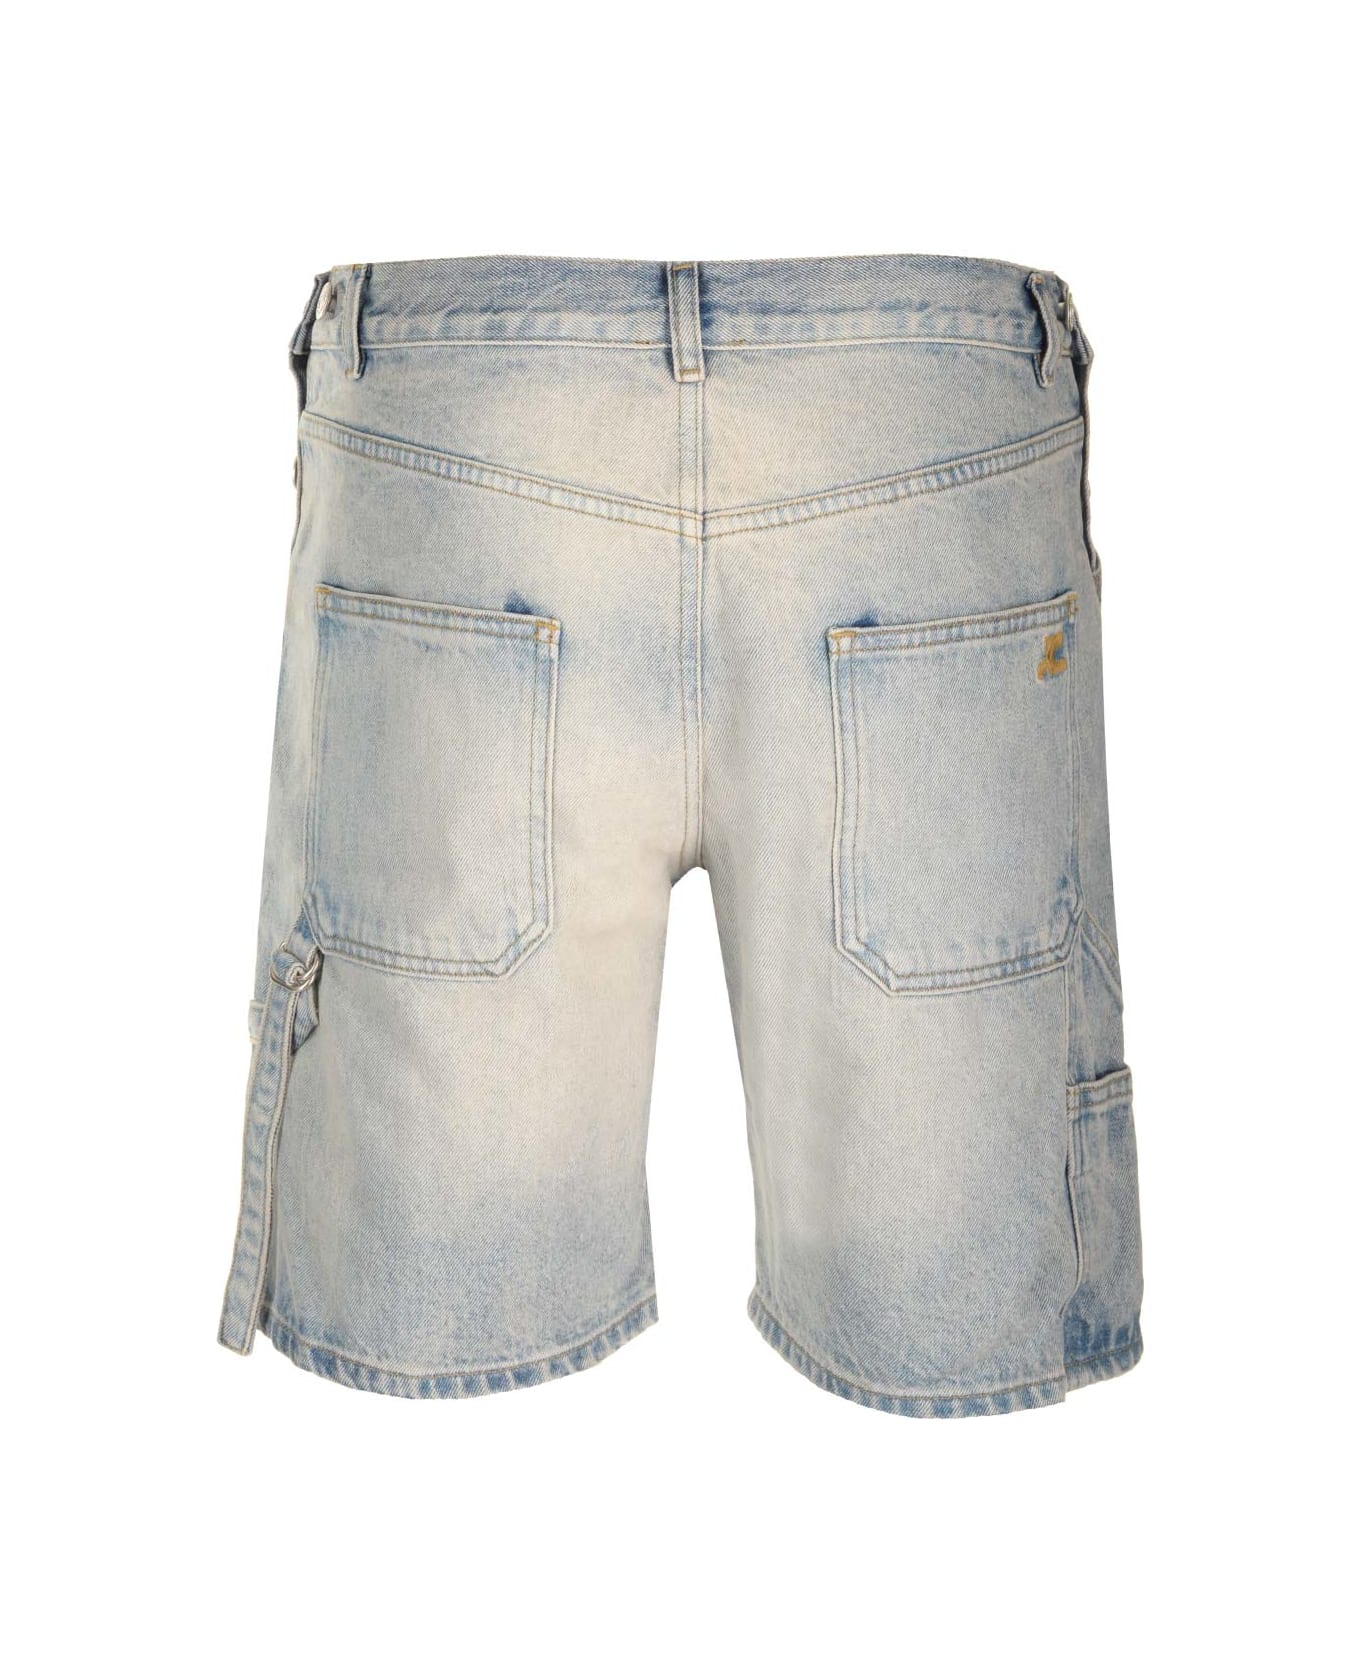 Courrèges 'sailor' Bermuda Shorts - Light Blue Wash